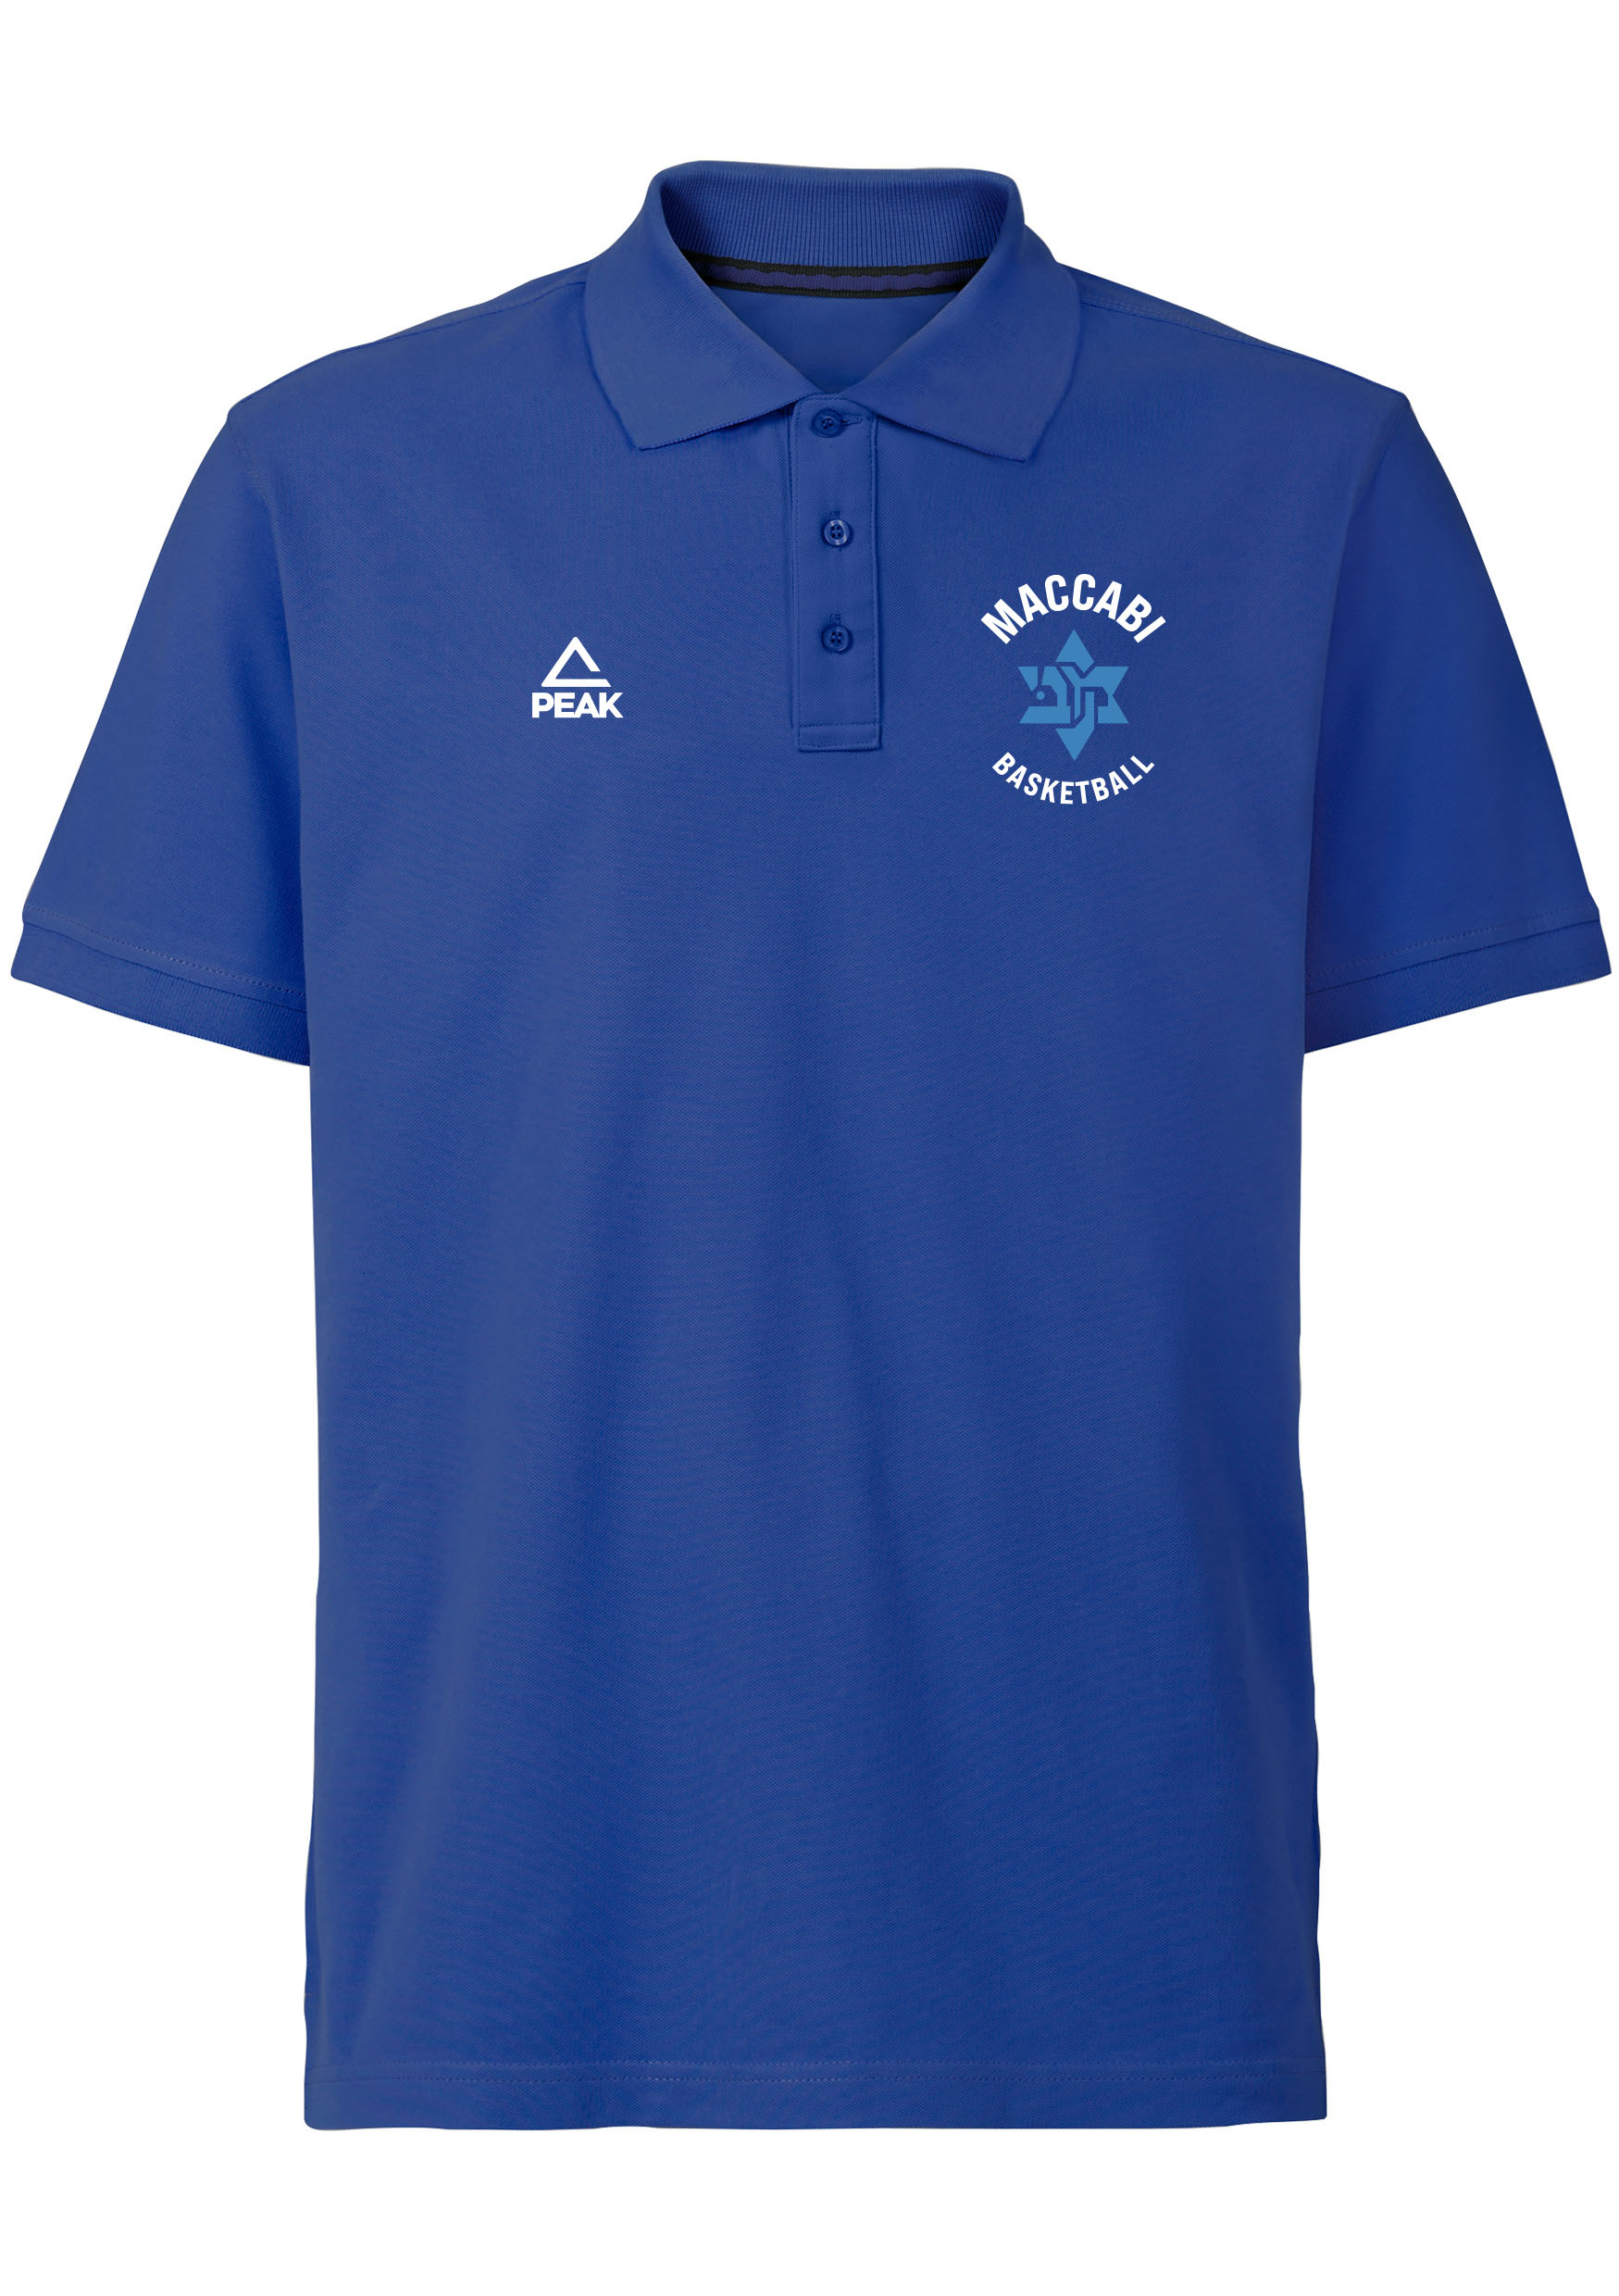 Maccabi München Poloshirt blau